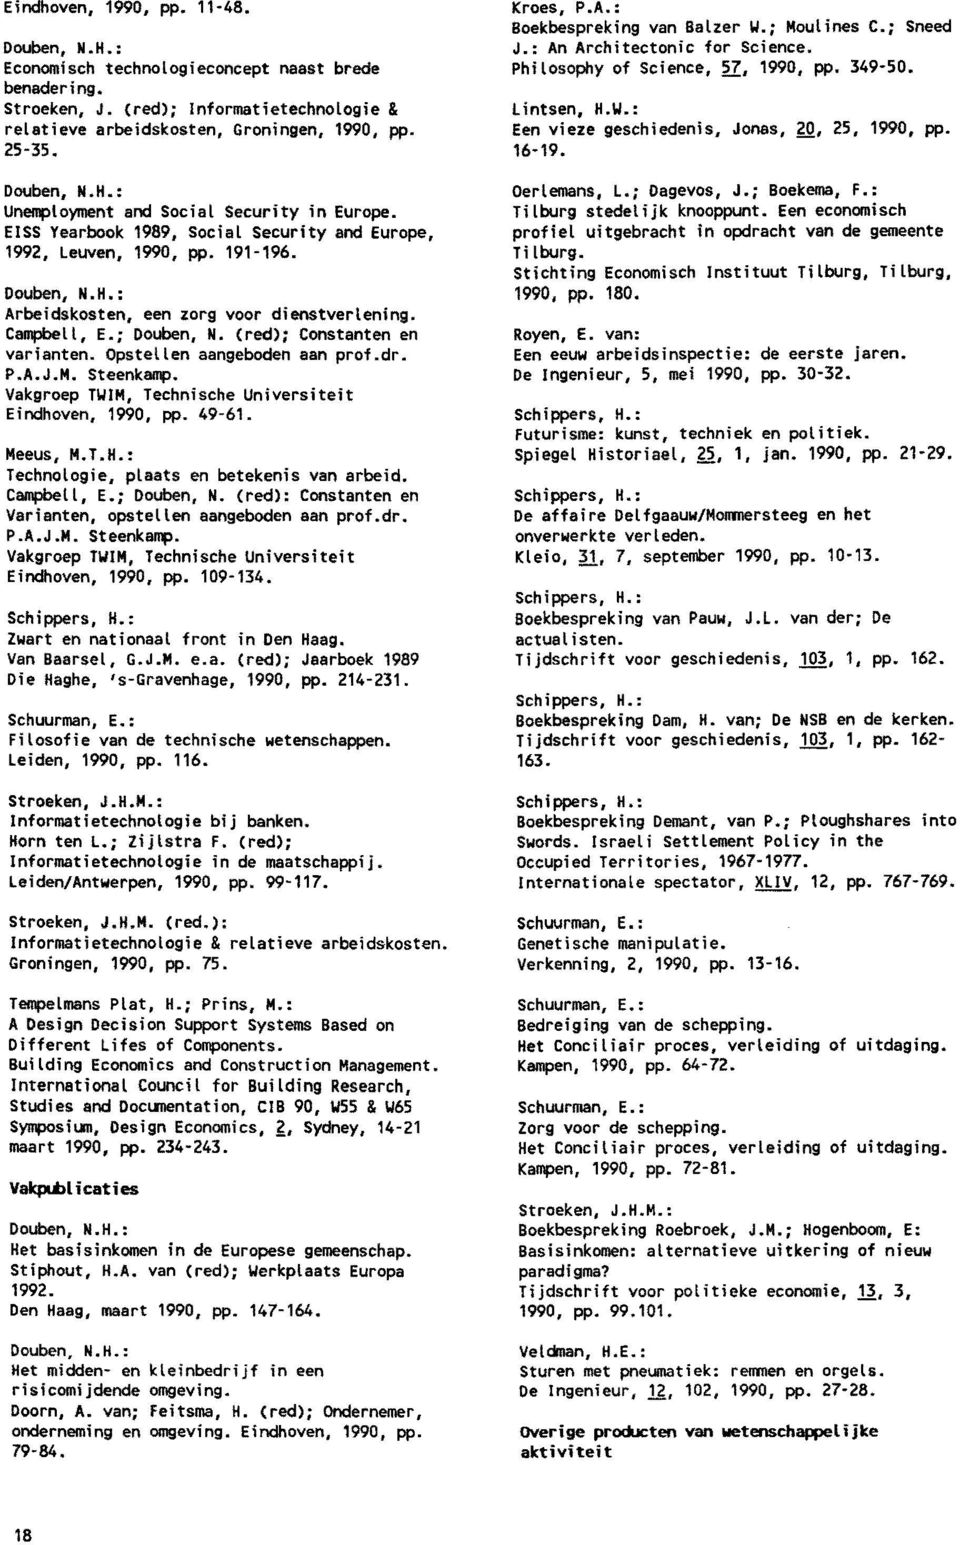 Campbell, E.; Douben, N. (red): Constanten en varianten. Opstellen aangeboden aan prof.dr. P.A.J.M. Steenkamp. Vakgroep TWIM, Technische Universiteit Eindhoven, 1990, pp. 49-61. Meeus, M.T.H.